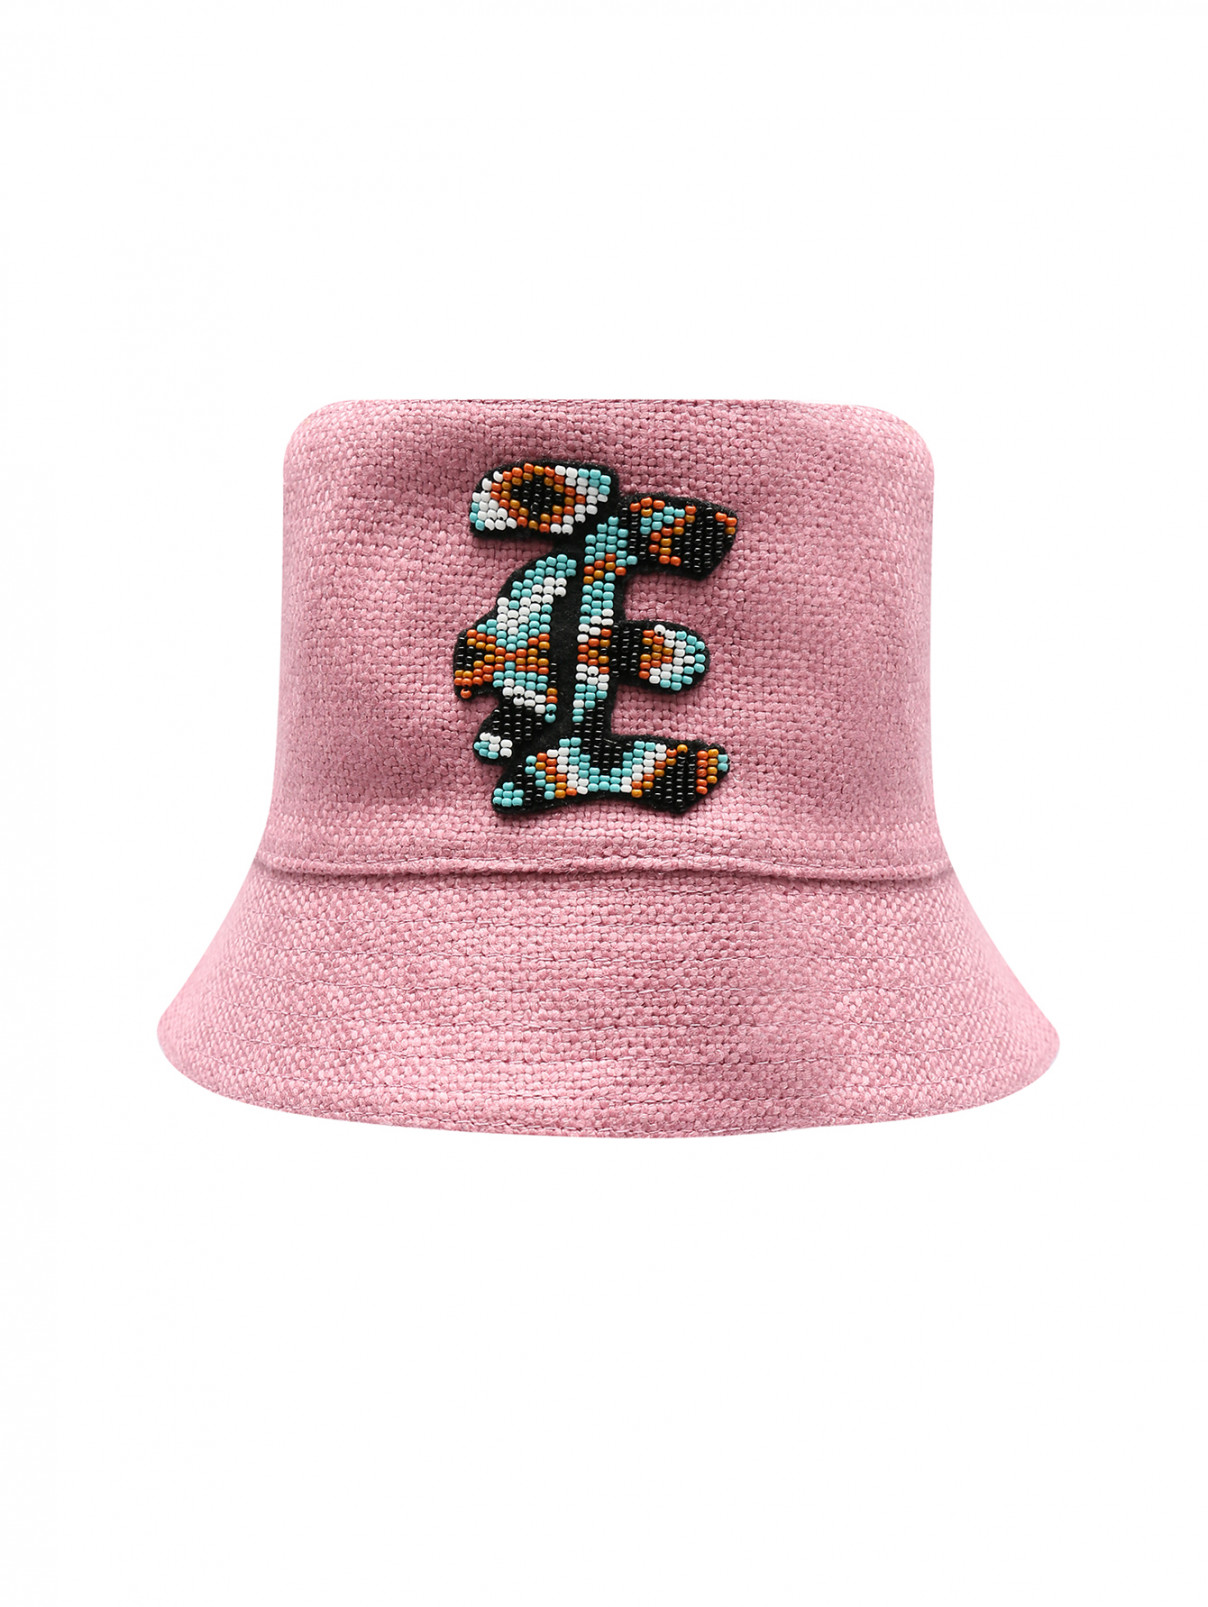 Панама из смешанного льна, декорированная бисером Ermanno Scervino  –  Общий вид  – Цвет:  Розовый